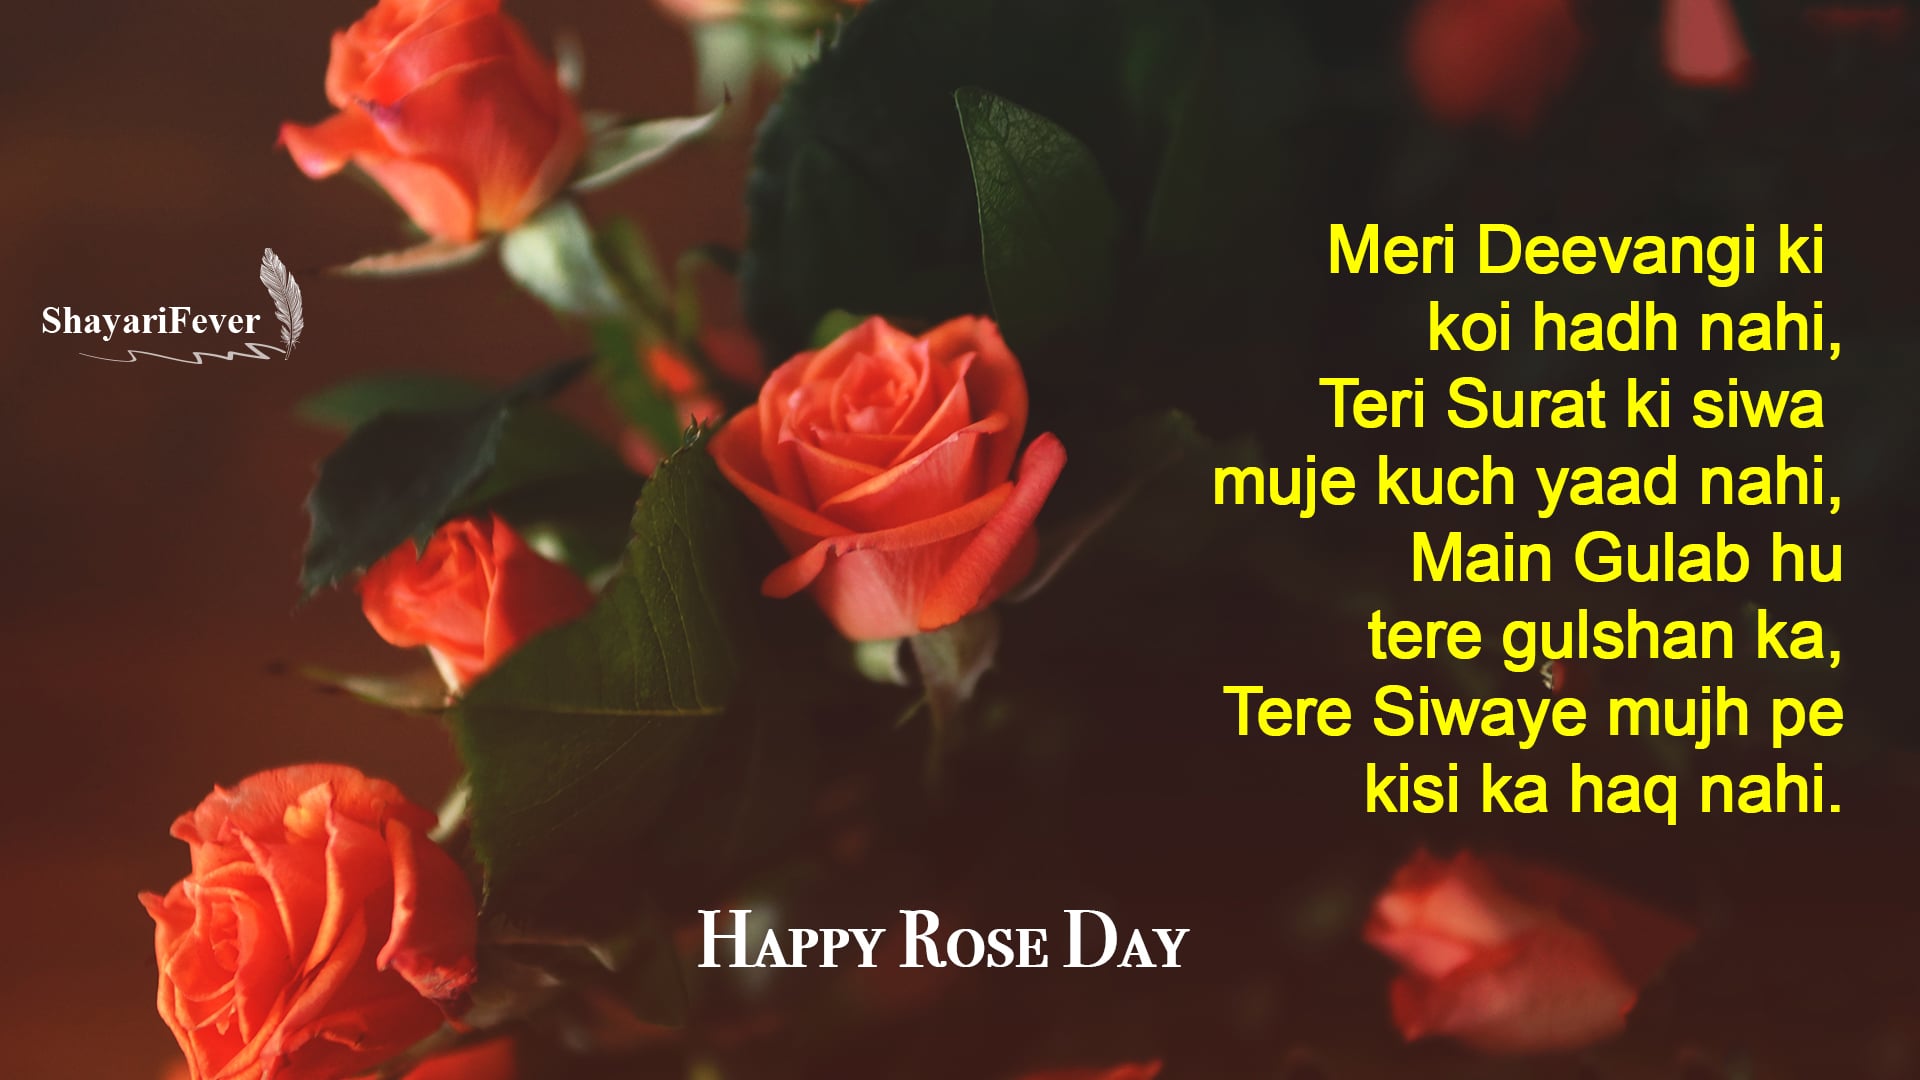 Love Shayari For Rose Day 2019